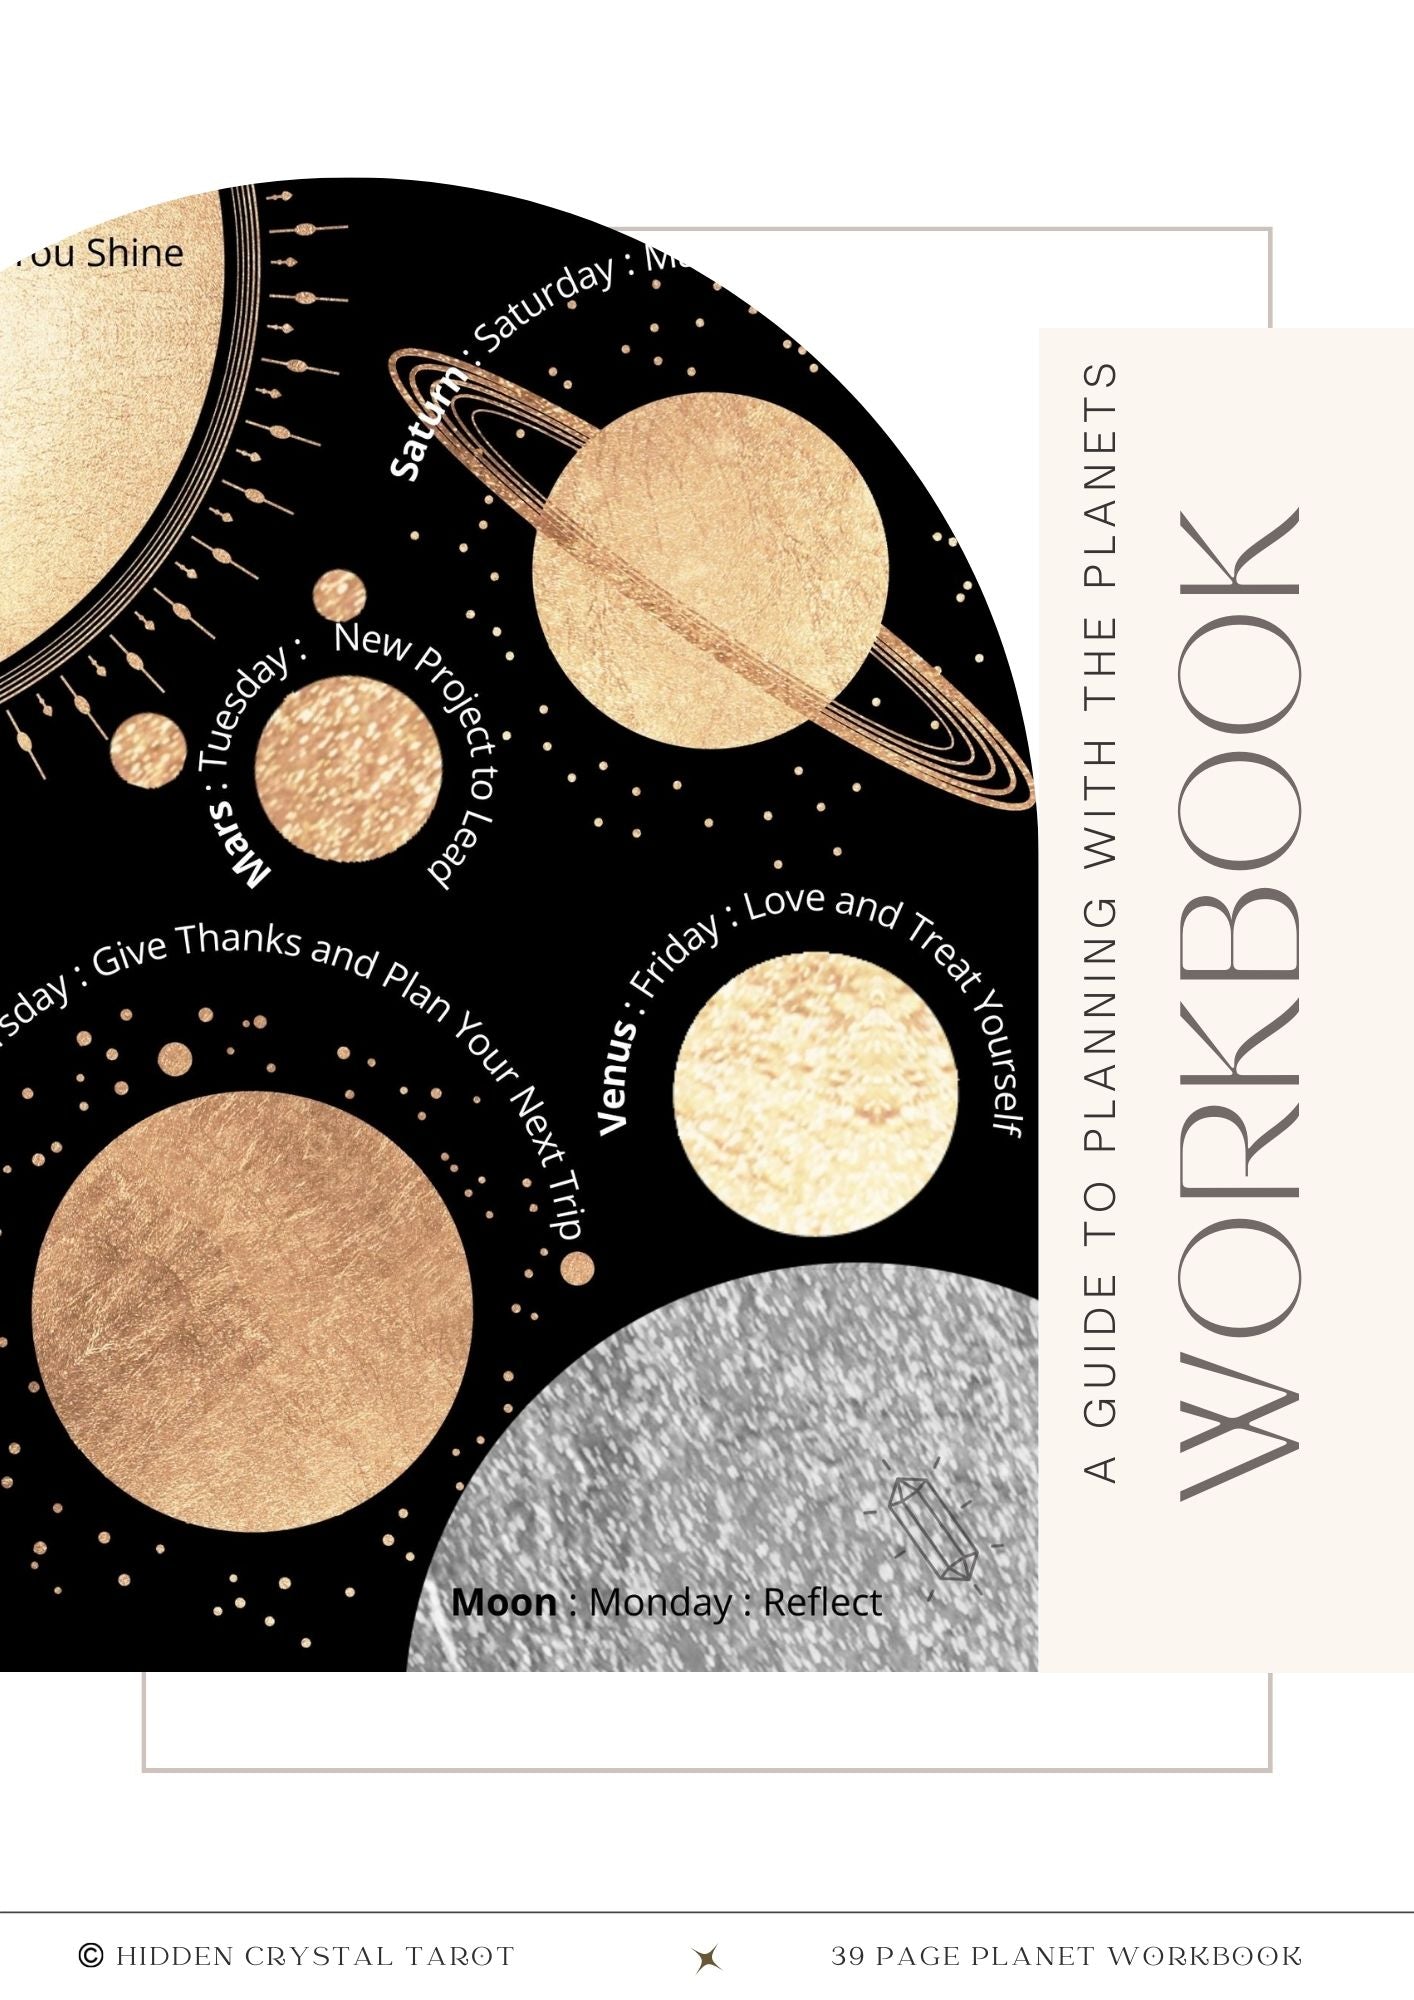 Planetary Energy Workbook: Digital Download